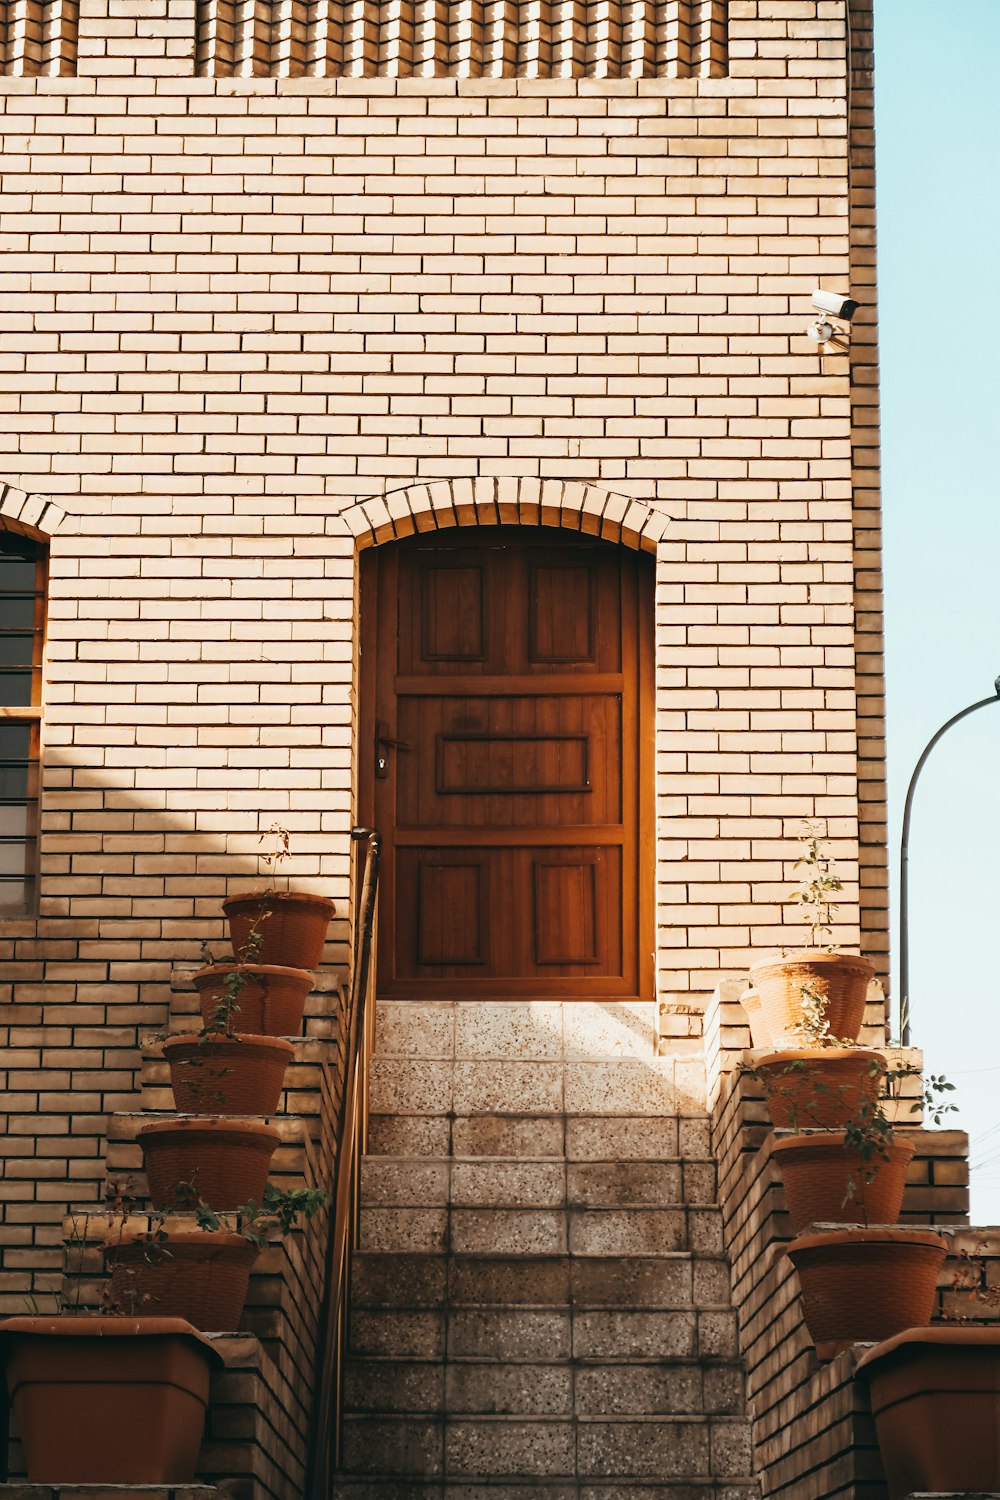 porta de madeira marrom no edifício de tijolos marrons